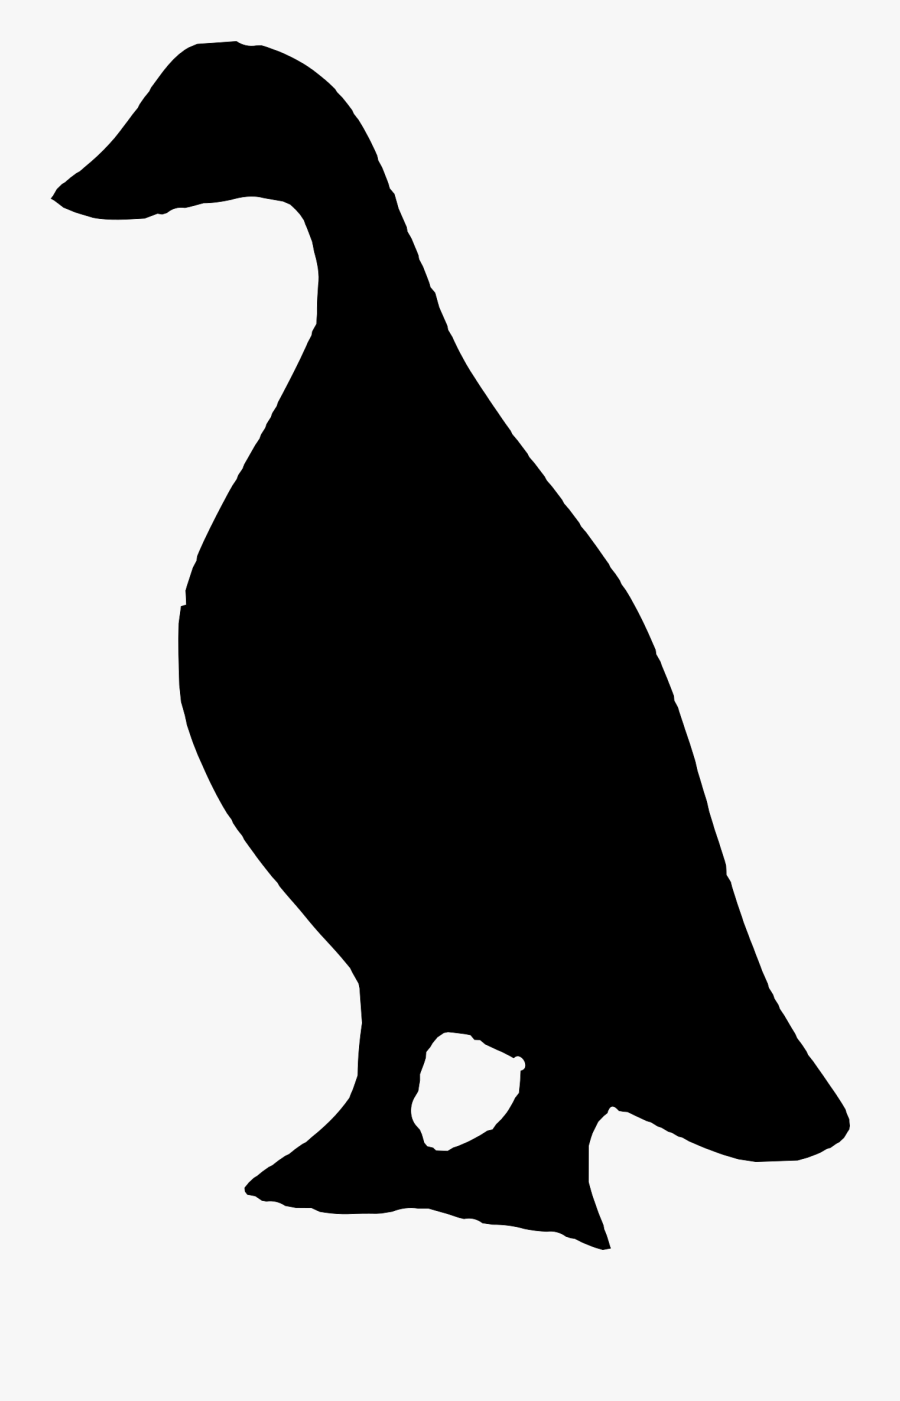 Clipart - Silhouette Ducks Clipart, Transparent Clipart